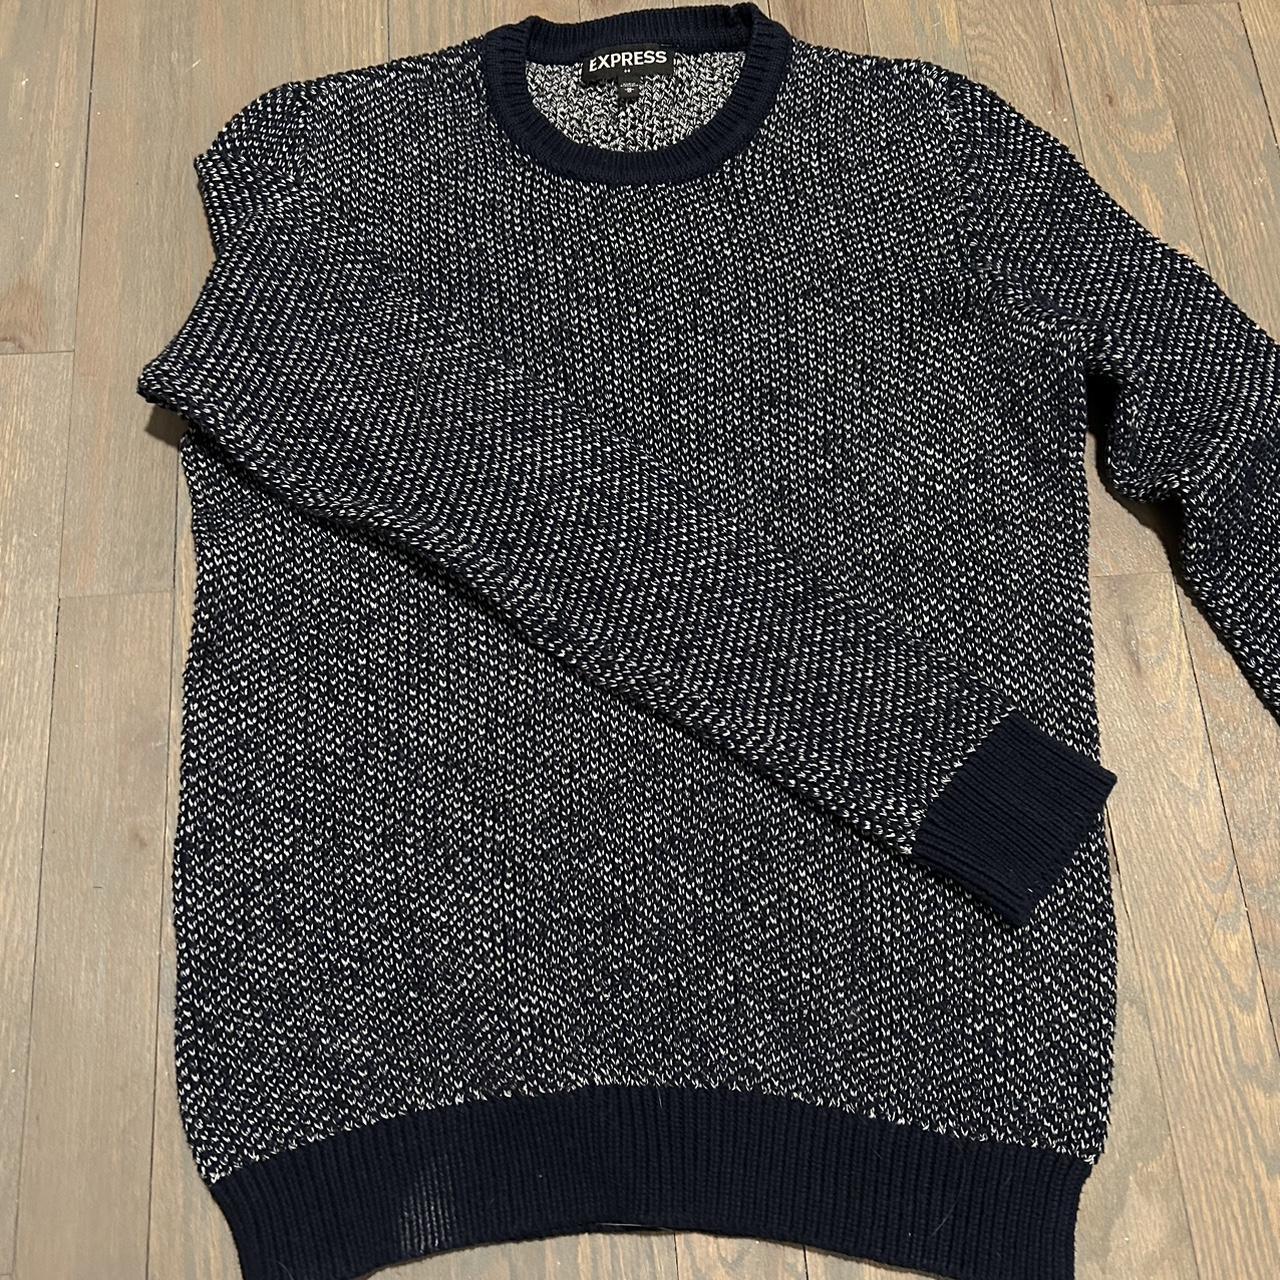 Express sweater - Depop